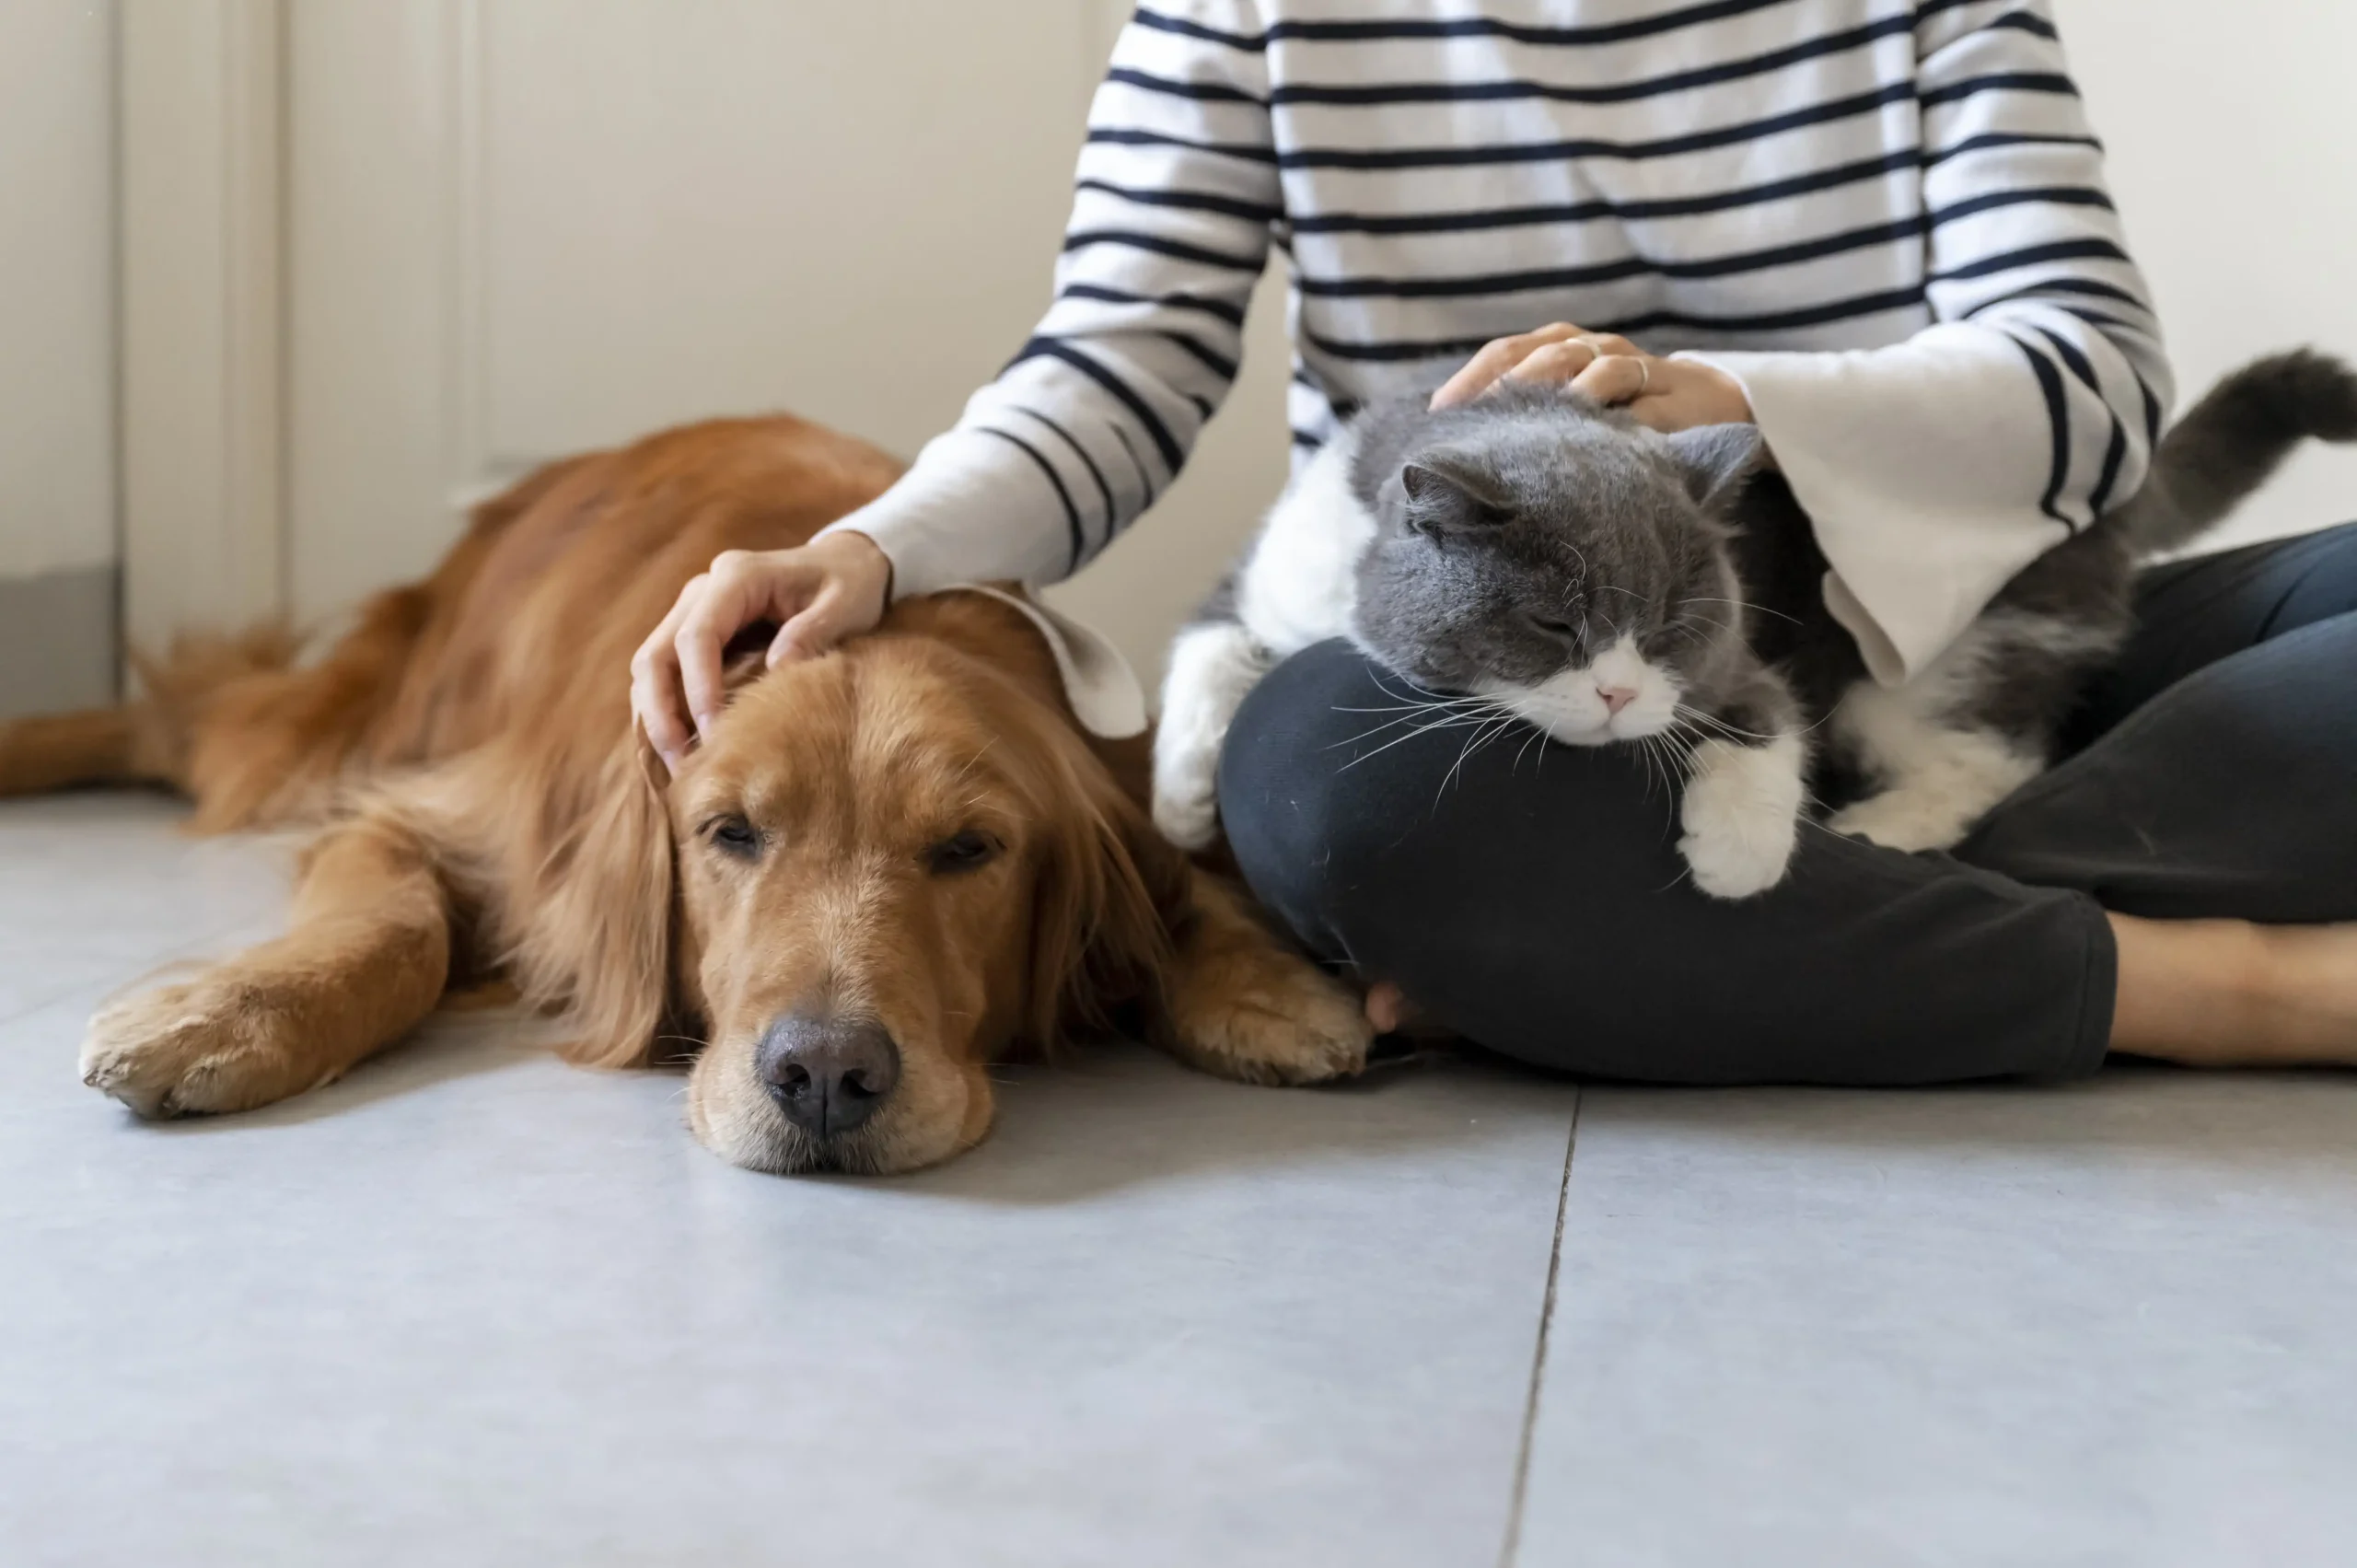 um cachorro marrom está deitado, sendo afagado por uma pessoa, enquanto um gato está deitado sobre seu colo.